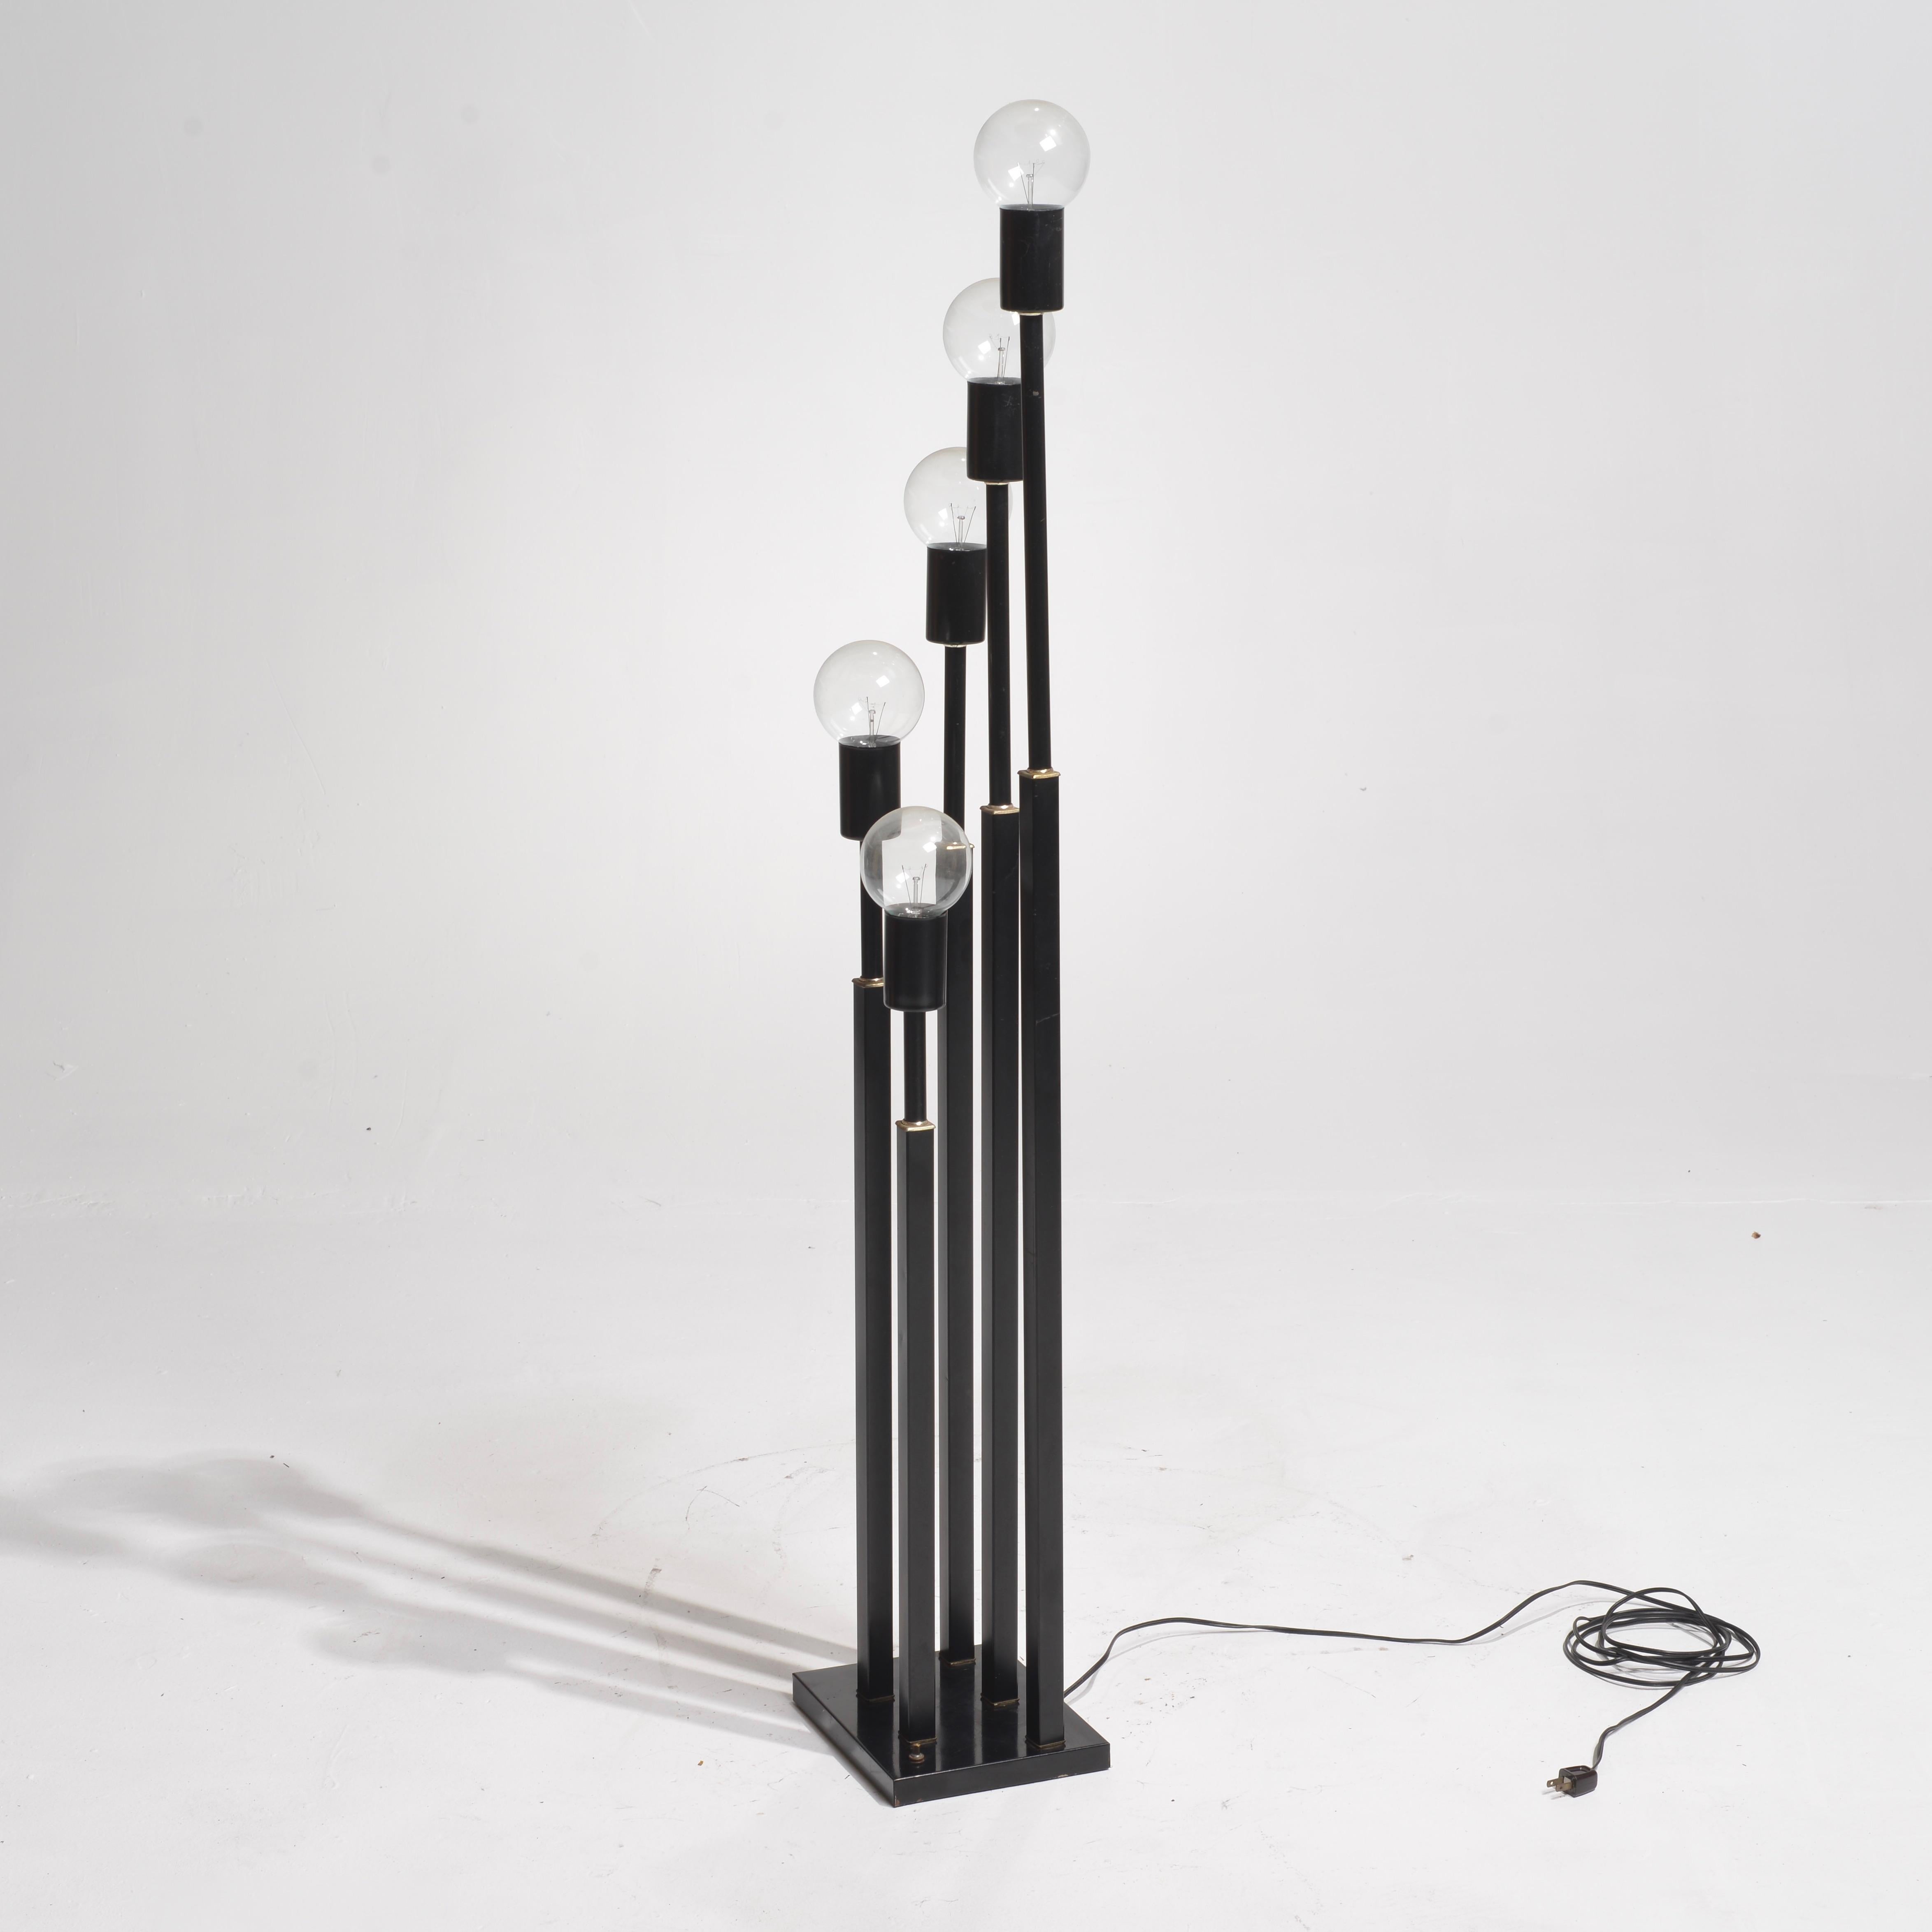 Ce lampadaire français du milieu du siècle est composé de cinq piliers en acier peint en noir et d'anneaux en laiton sur une base carrée. Chaque pilier se termine par une ampoule ronde et transparente.